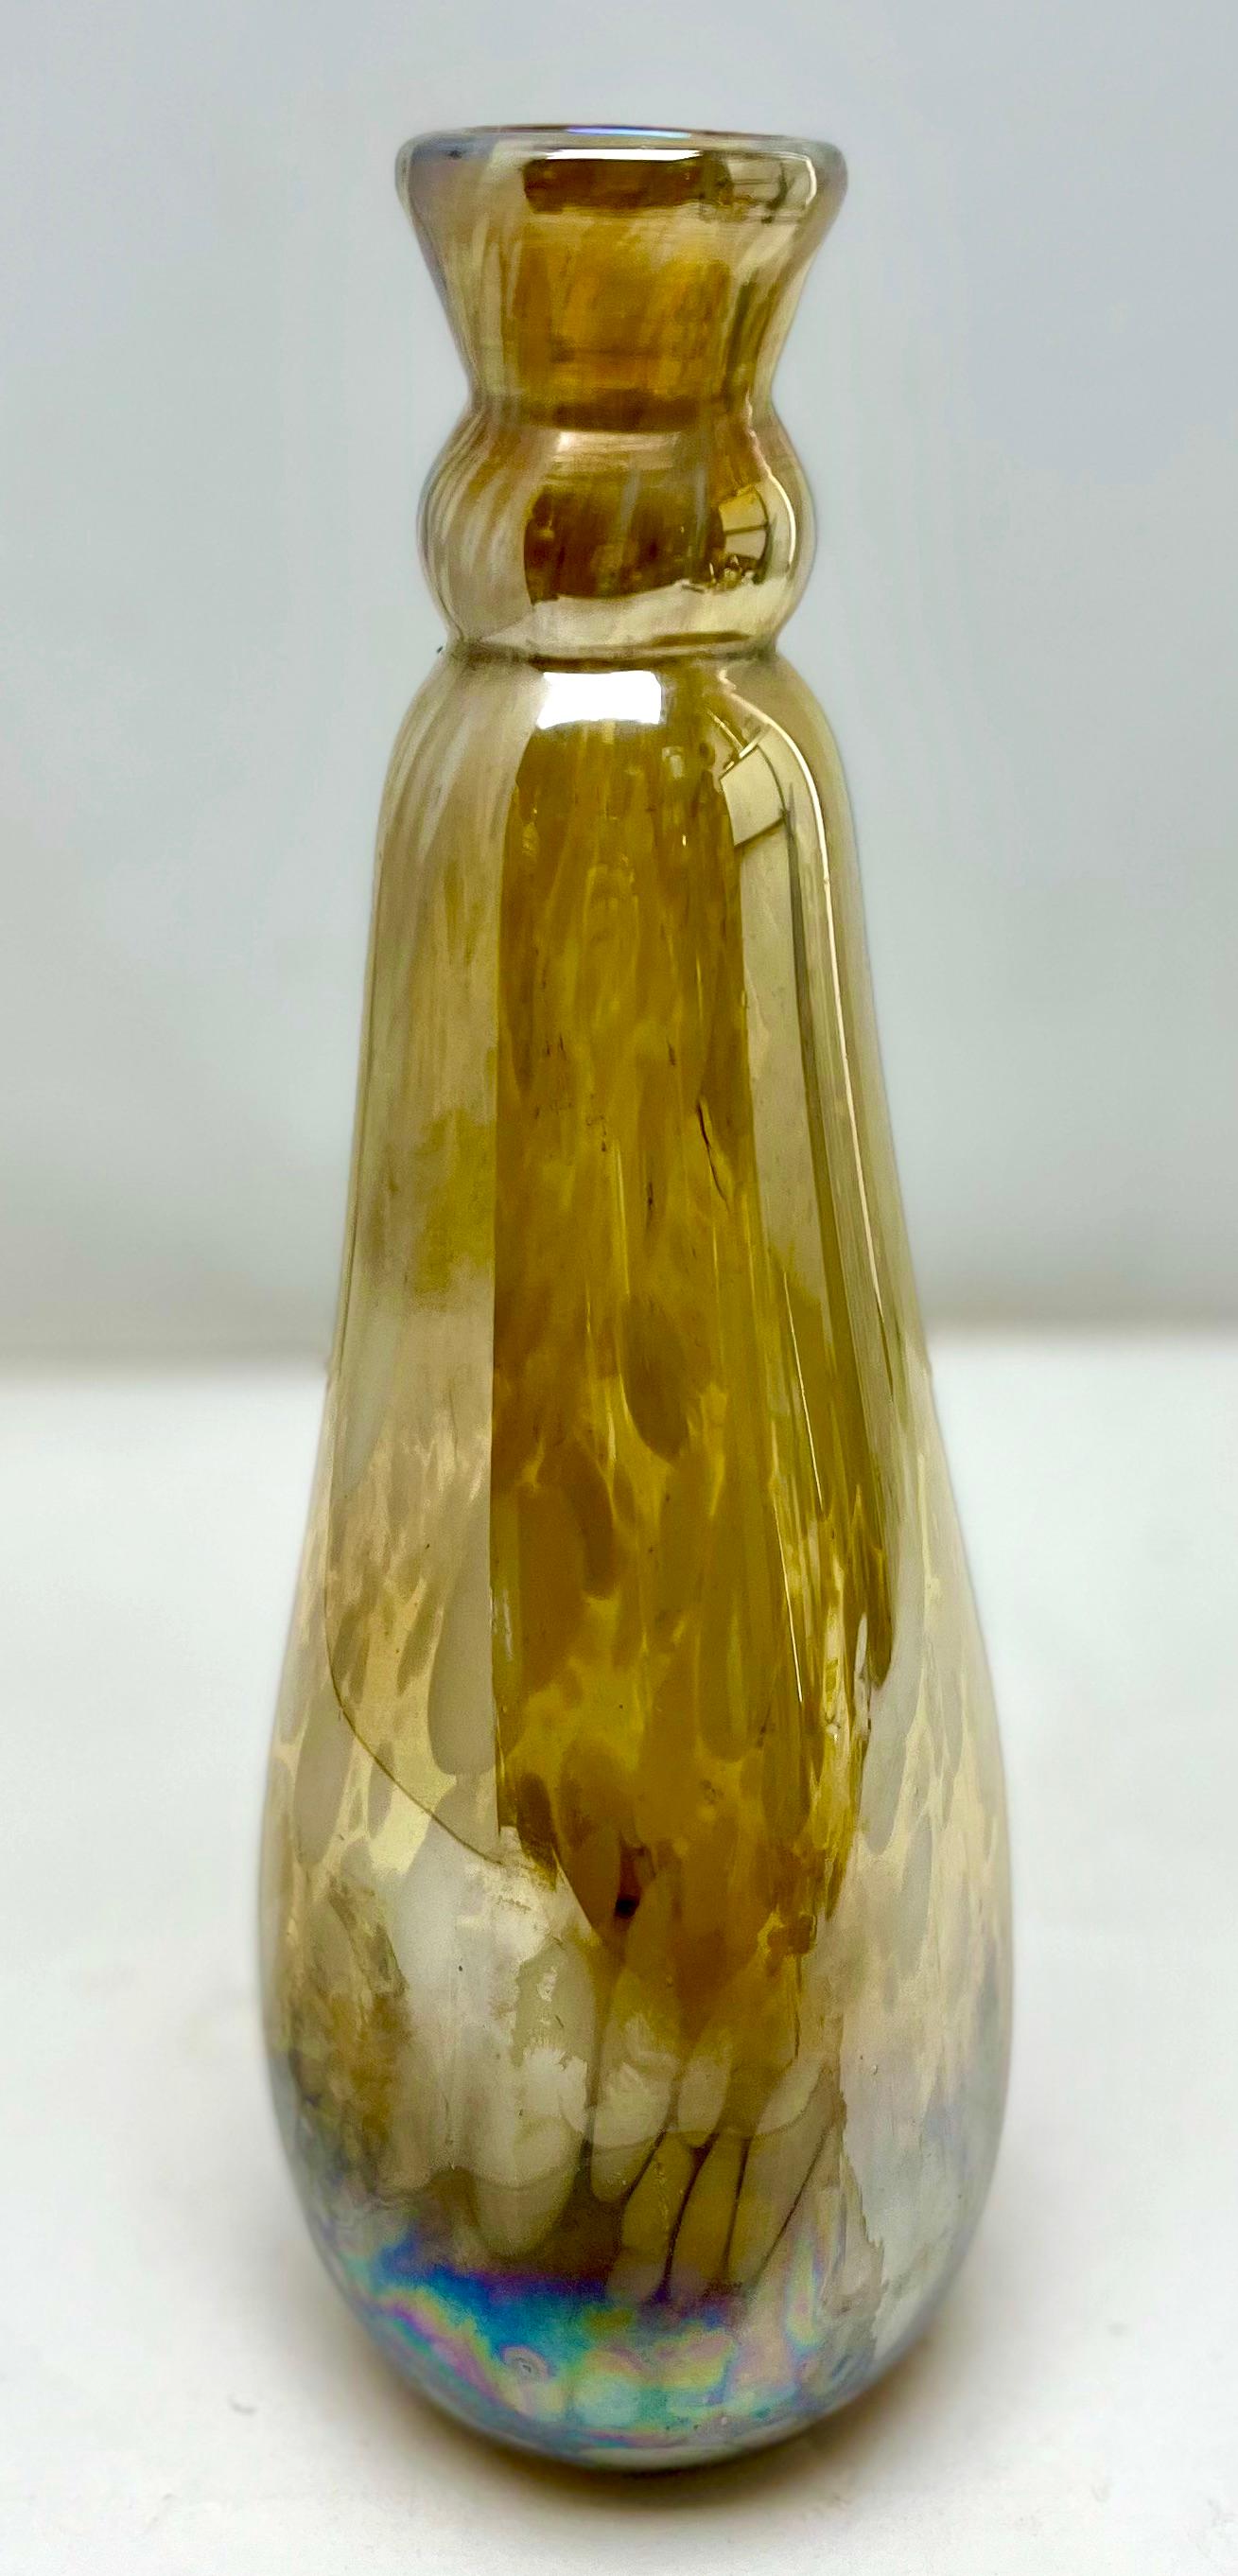 Erwin Eisch Collection, Vintage vase, thick-walled, heavy - art glass

Stylish, German, hand-blown art glass vase from the Erwin Eich Collection, made in the Eisch Frauenau glassworks between 1979-1990. Erwin Eisch (German, born 1927) is